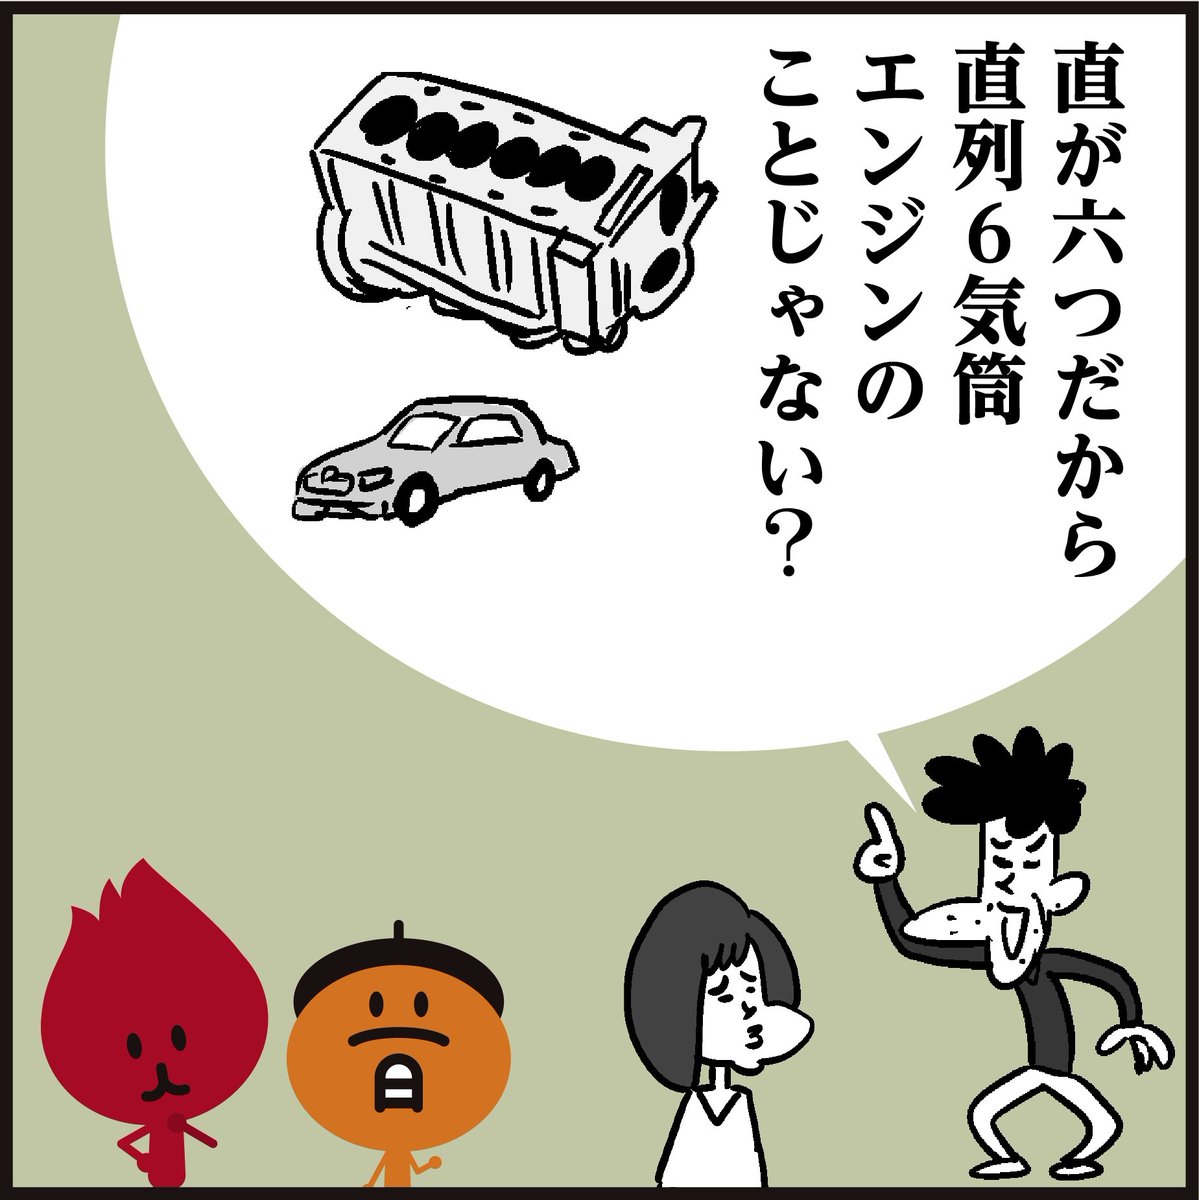 「矗矗」【難読漢字】
これを読めた人は凄い!!
「直が6つも…キモイです…」
🤔直立の様を表すのに、何も「直」を6つも並べなくても良いのでは… #イラスト #4コマ漫画 #マンガ 